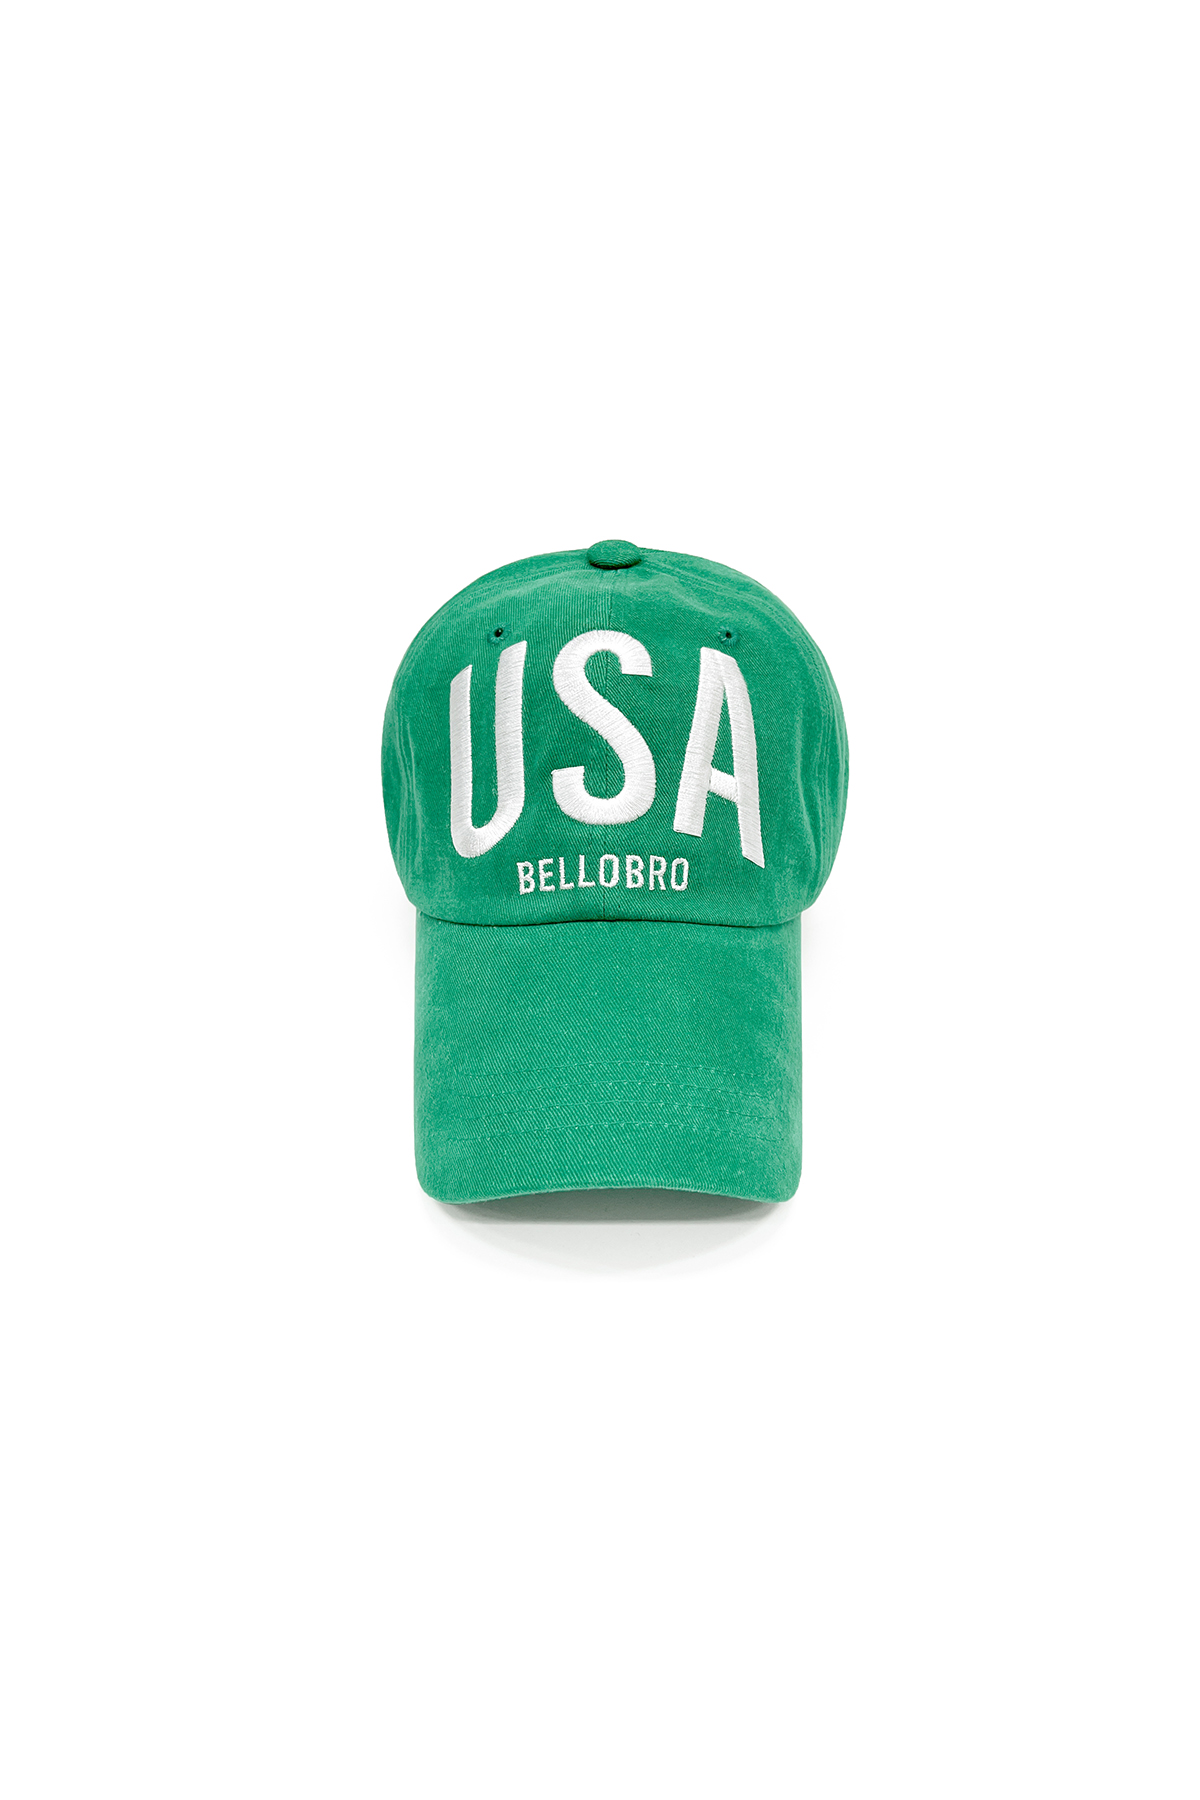 USA cap (green)